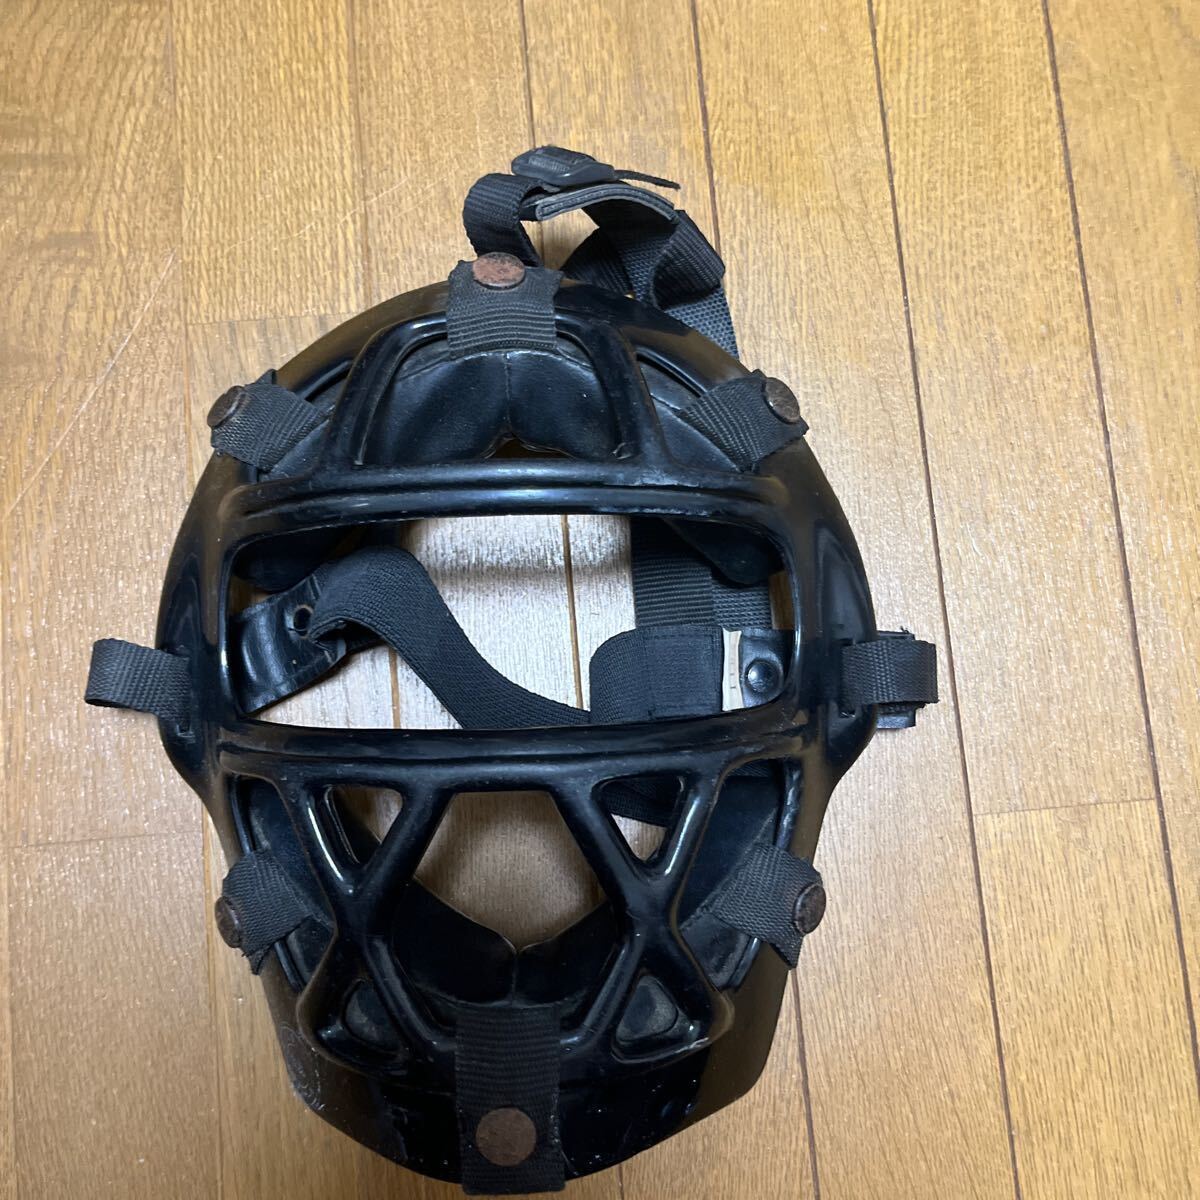  catcher protector protector mask helmet 